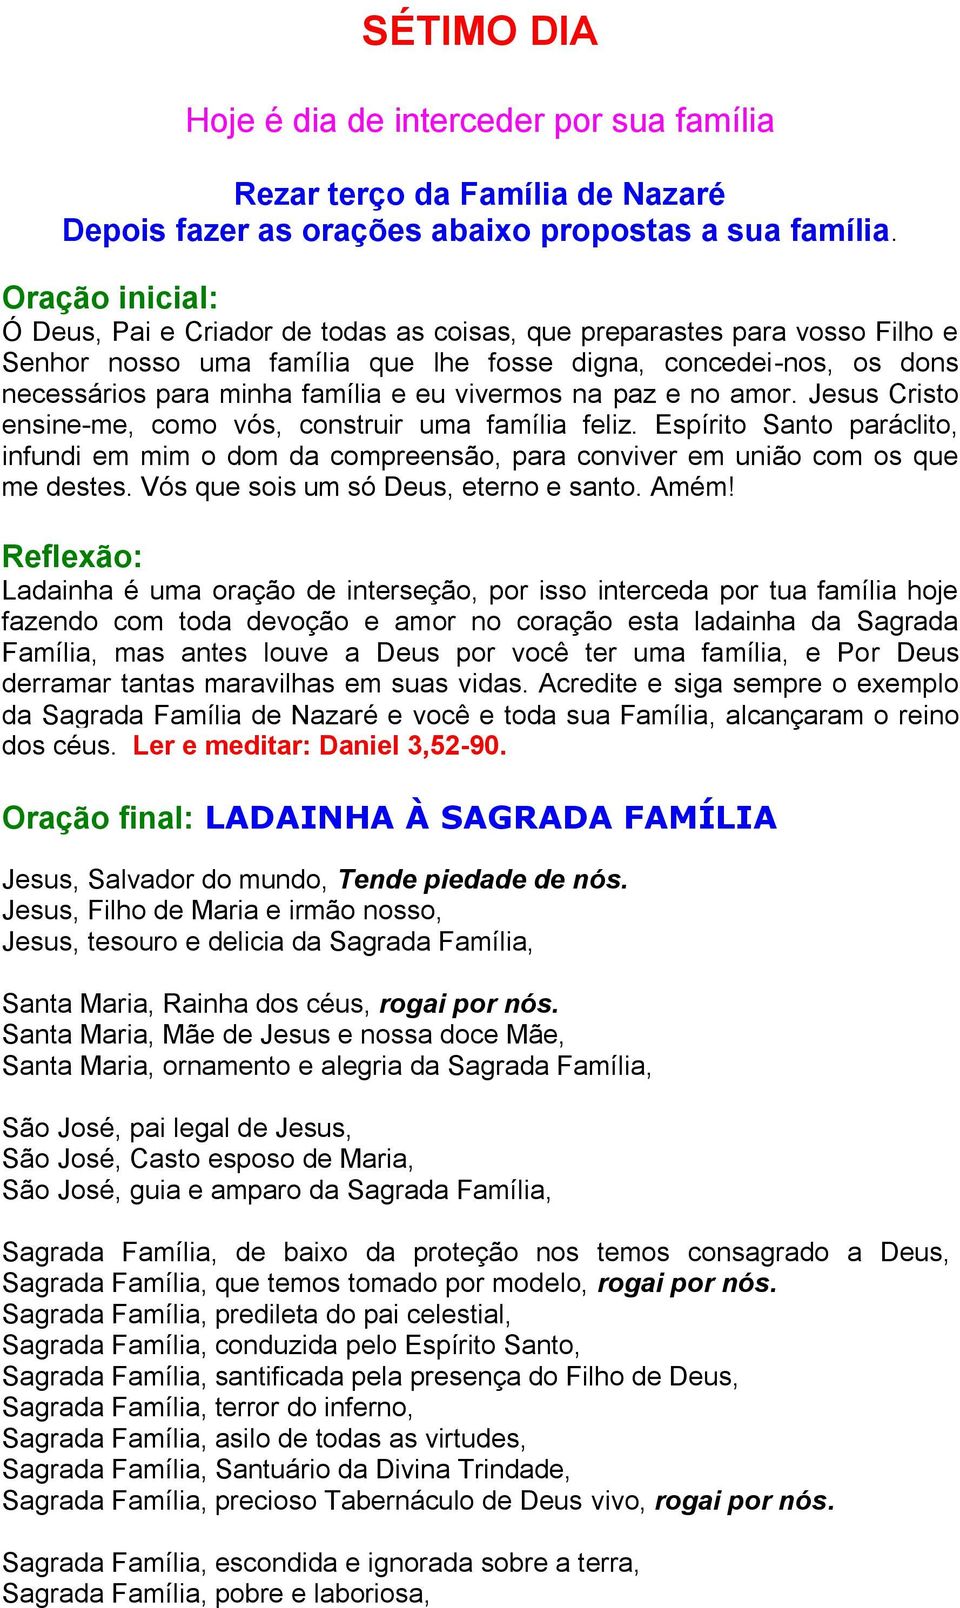 Acredite e siga sempre o exemplo da Sagrada Família de Nazaré e você e toda sua Família, alcançaram o reino dos céus. Ler e meditar: Daniel 3,52-90.